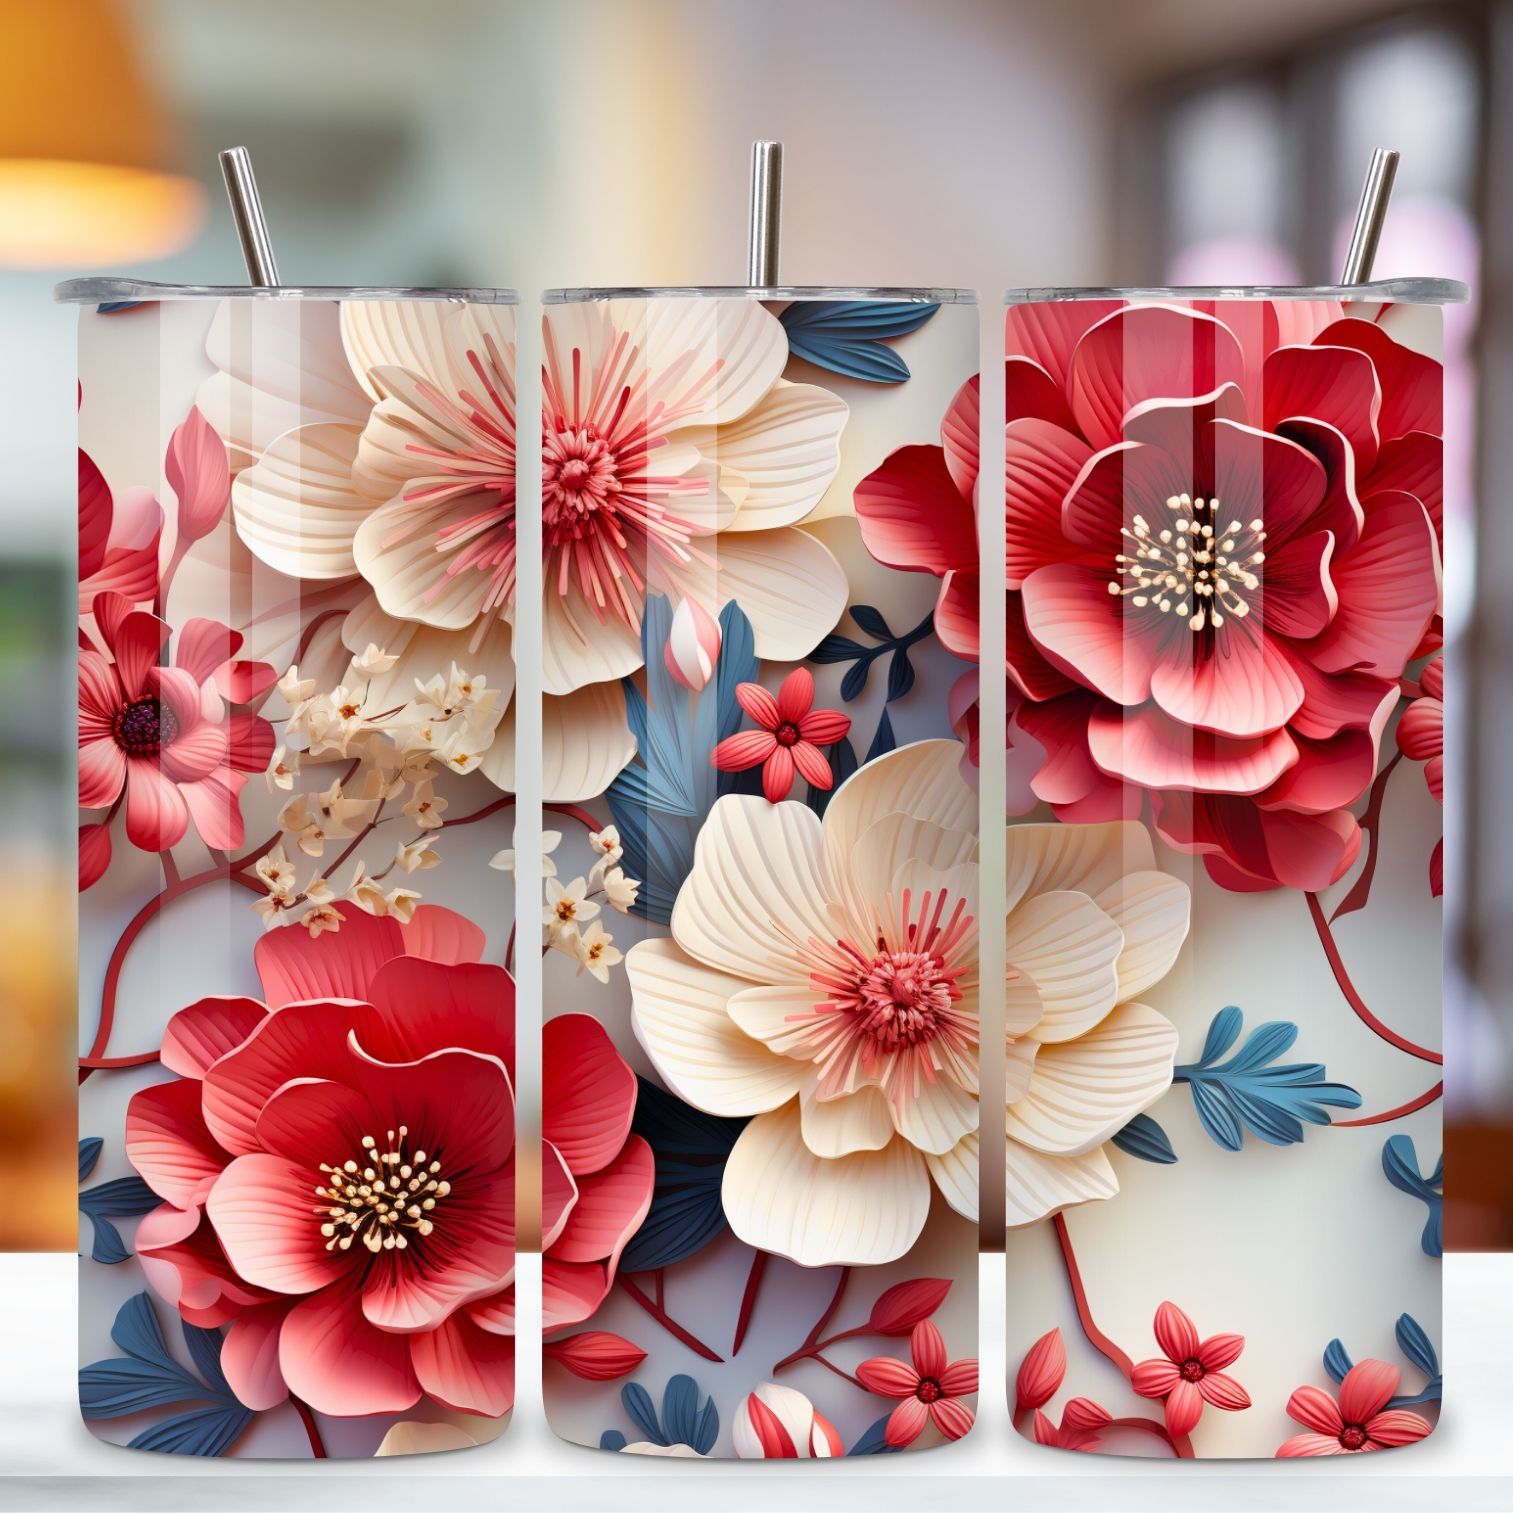 3D Floral Tumbler Wrap, Floral Tumbler Wrap, 3D Flowers 20oz Tumbler Sublimation Designs, Tumbler Wraps preview image.